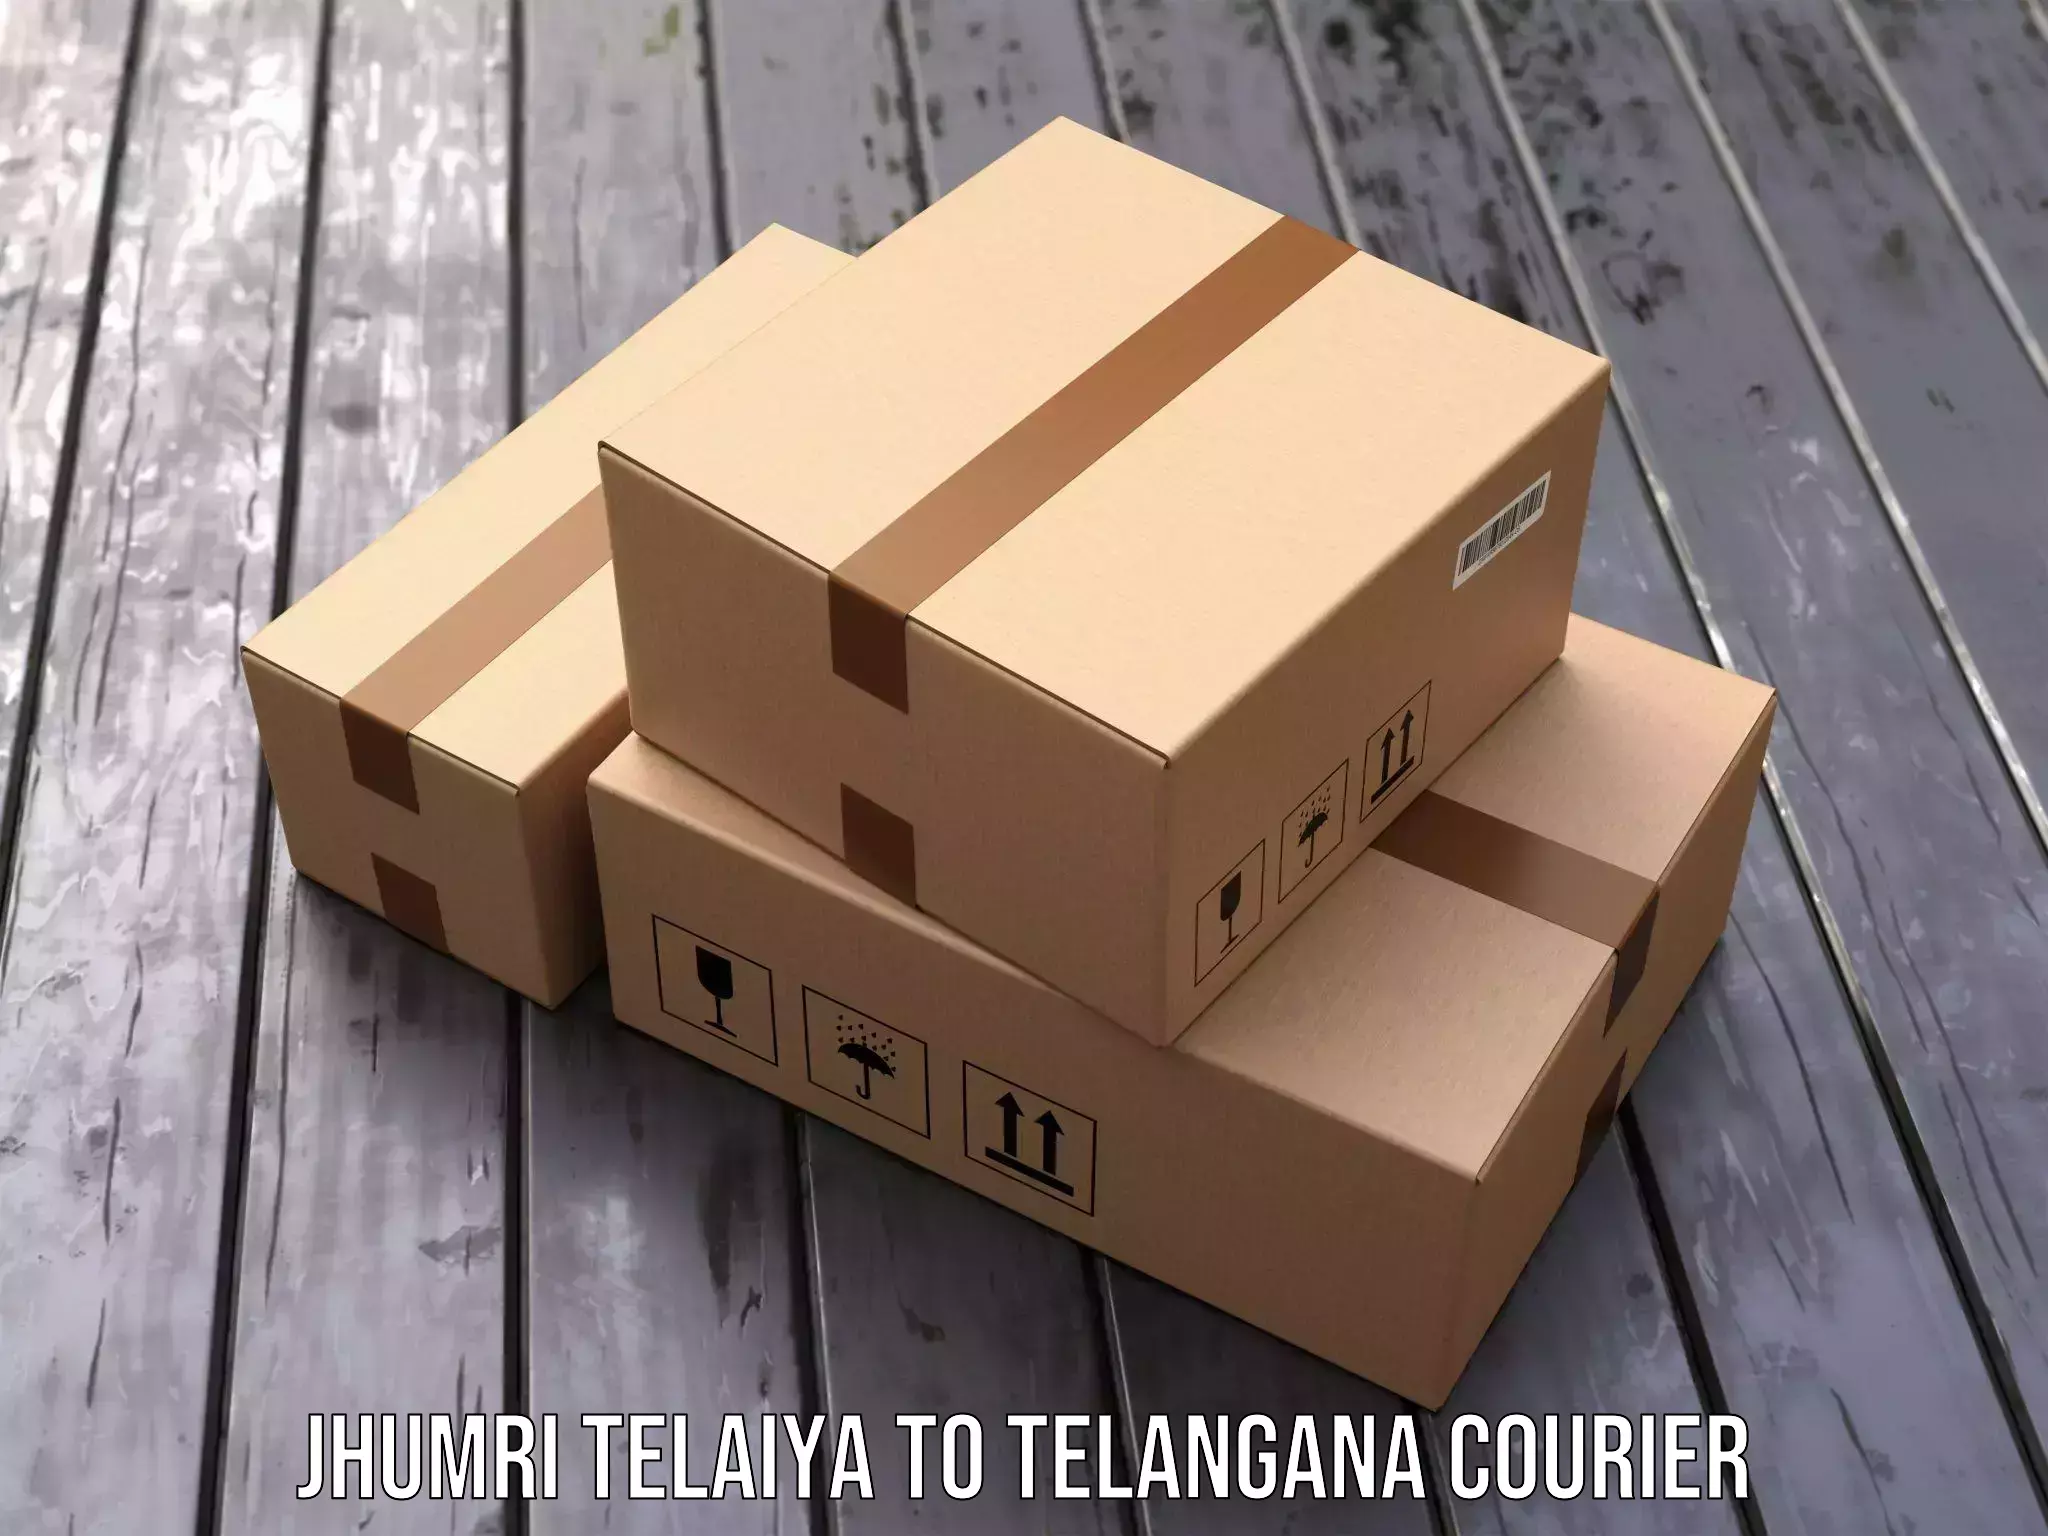 User-friendly delivery service Jhumri Telaiya to Mahabubnagar